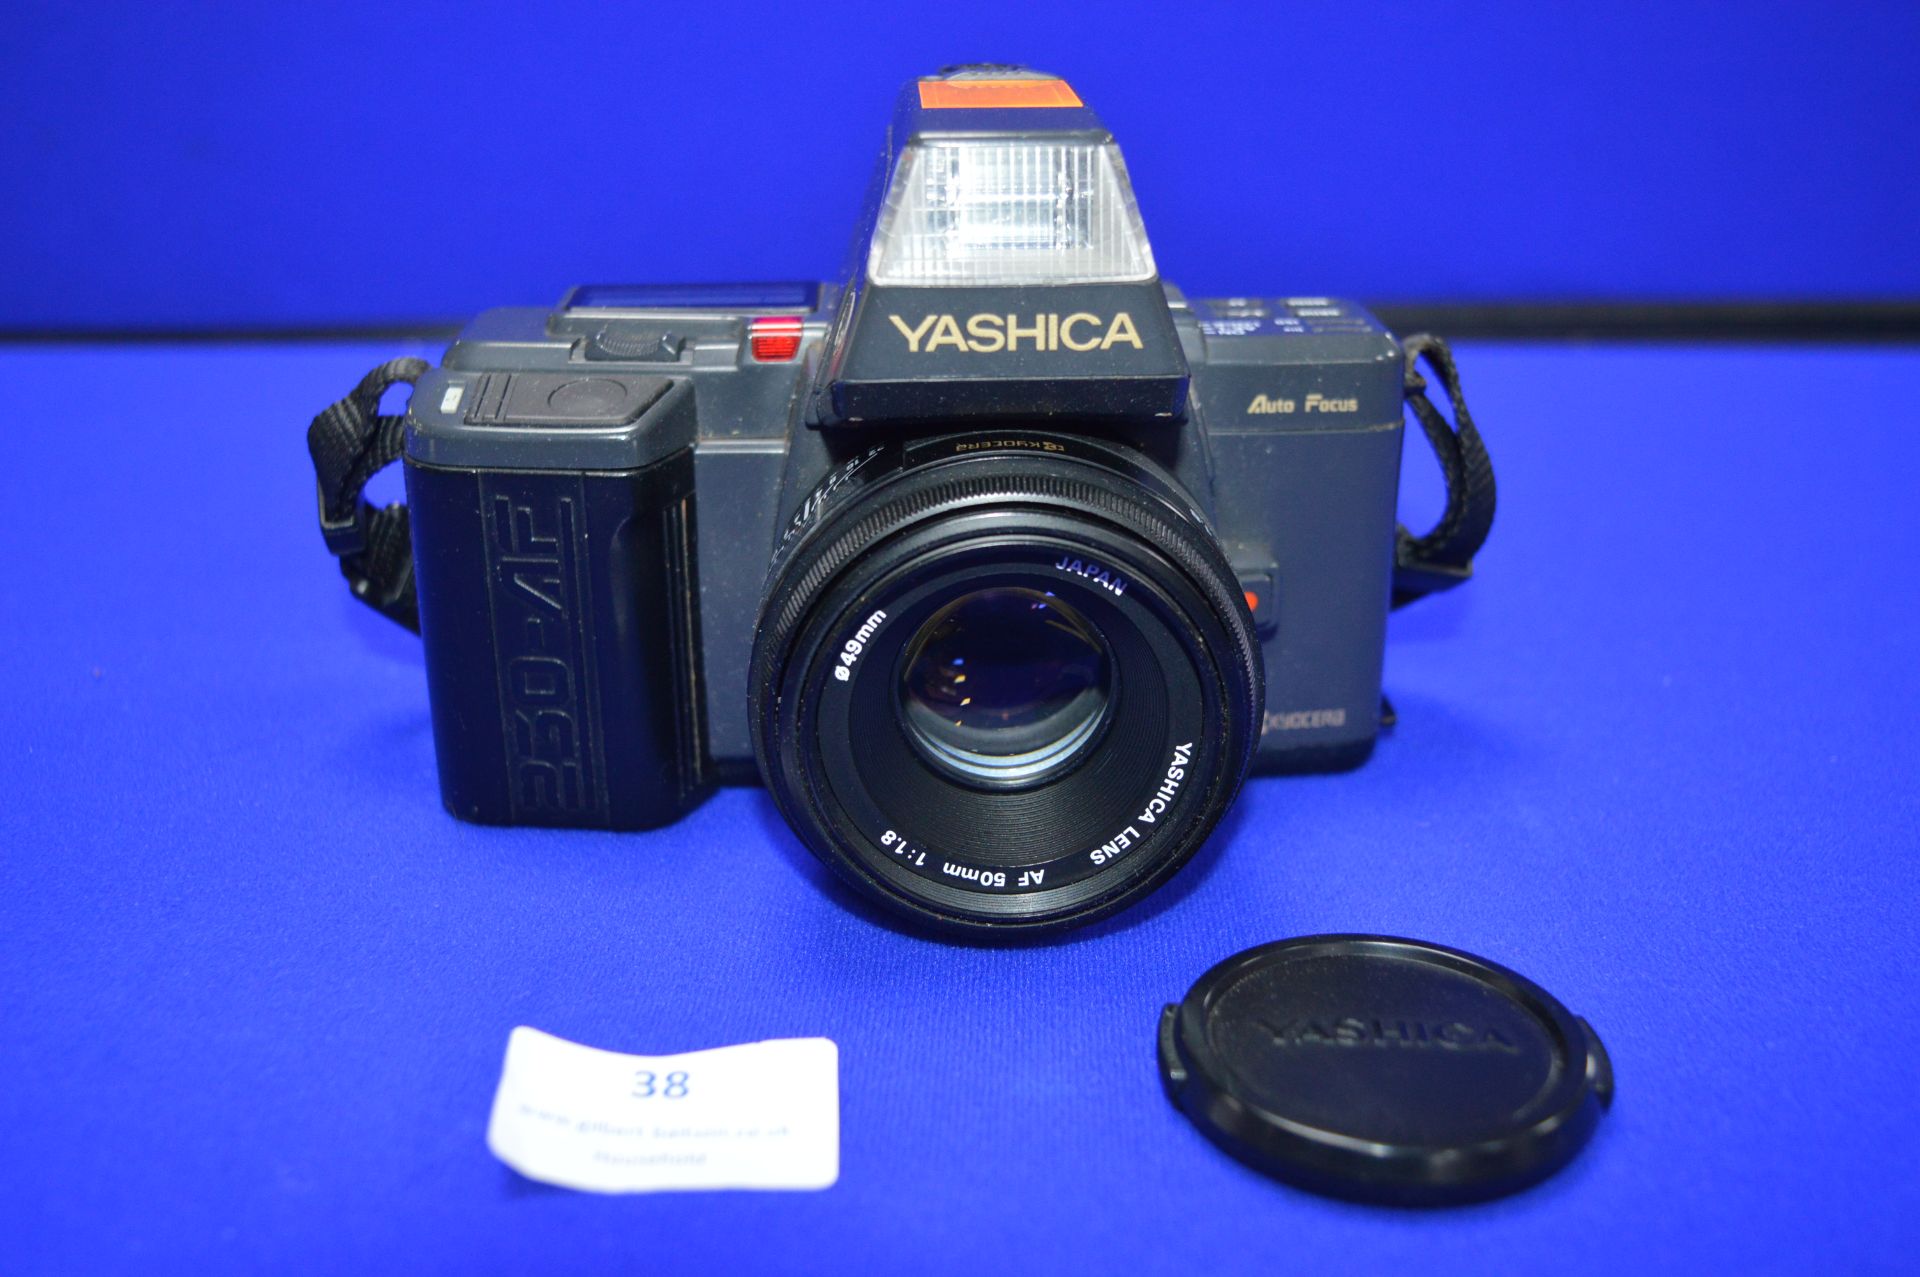 Yashica 230-AF SLR Camera with Yashica AF 50mm 1:1.8 Lens